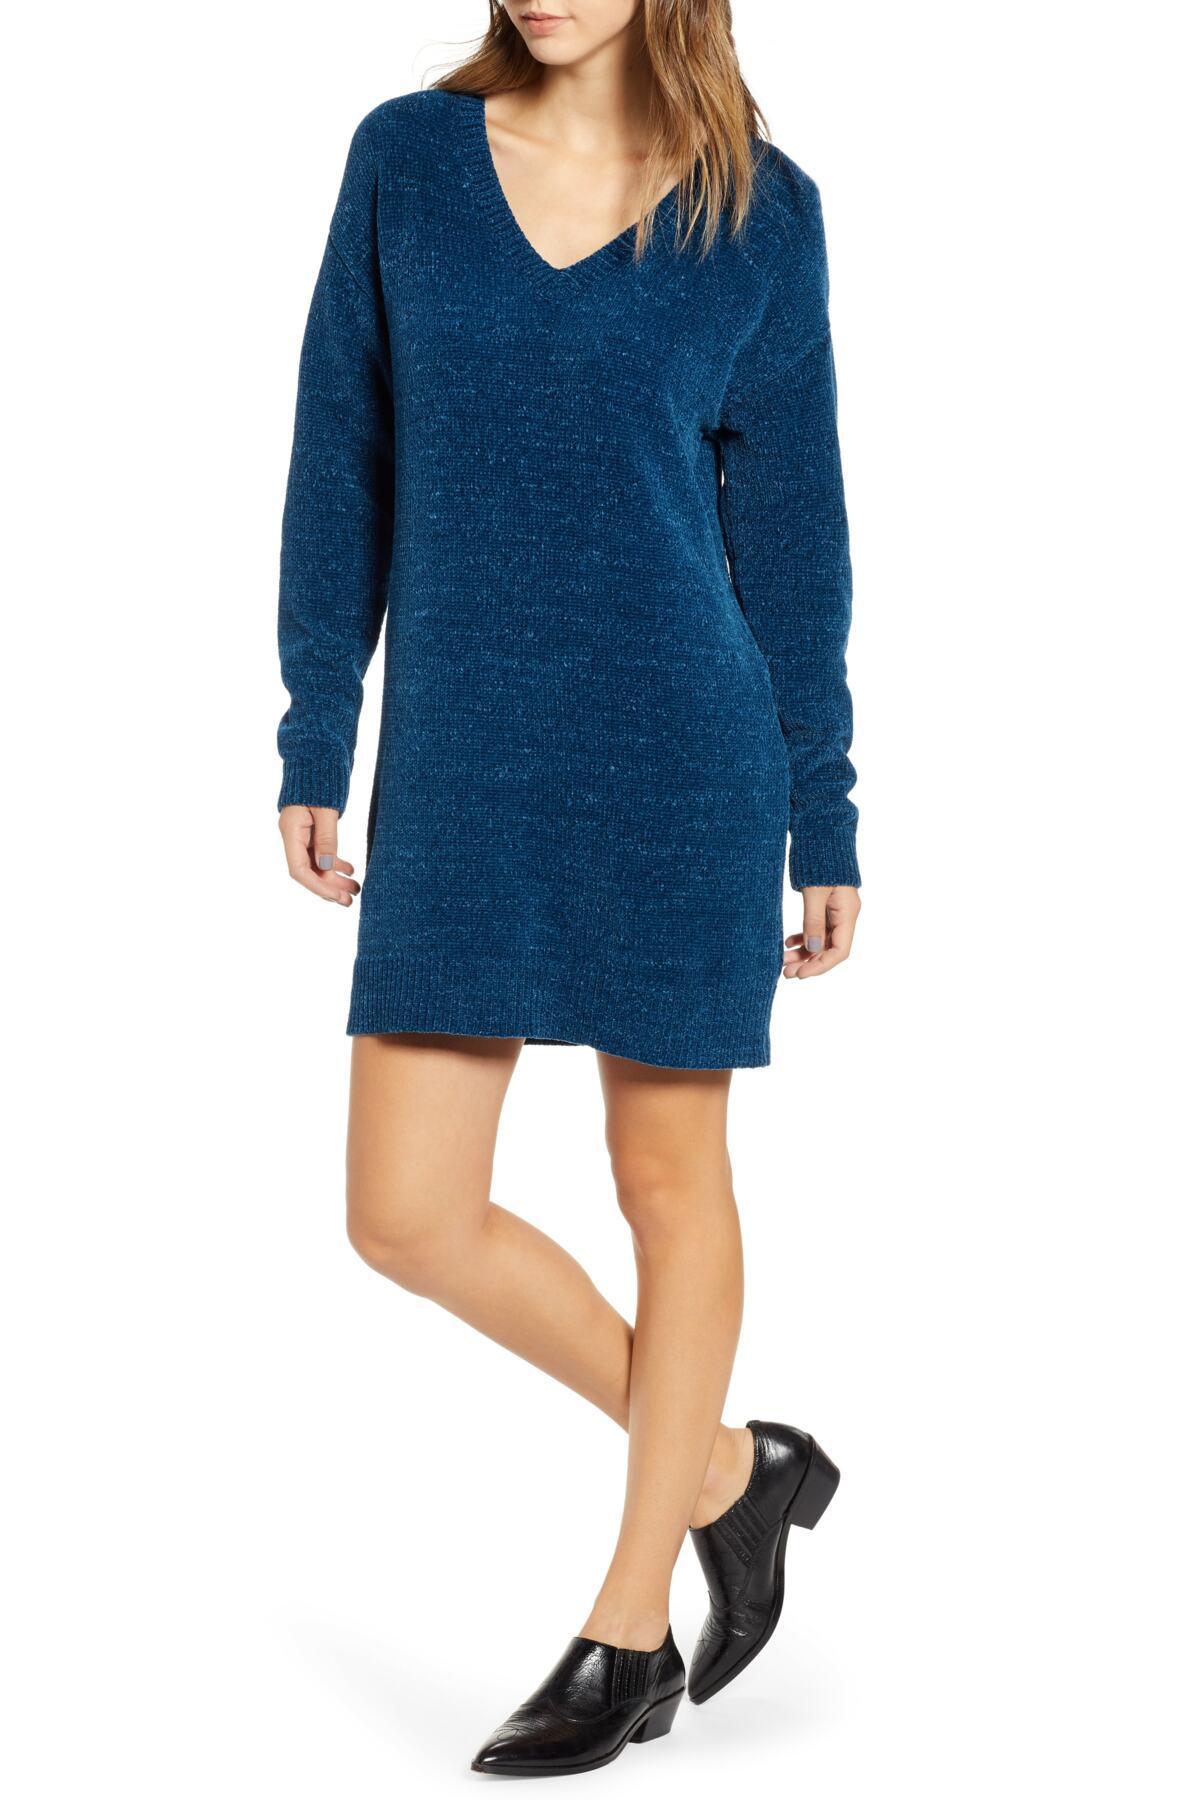 BP. Chenille Sweater Dress in Blue - Lyst